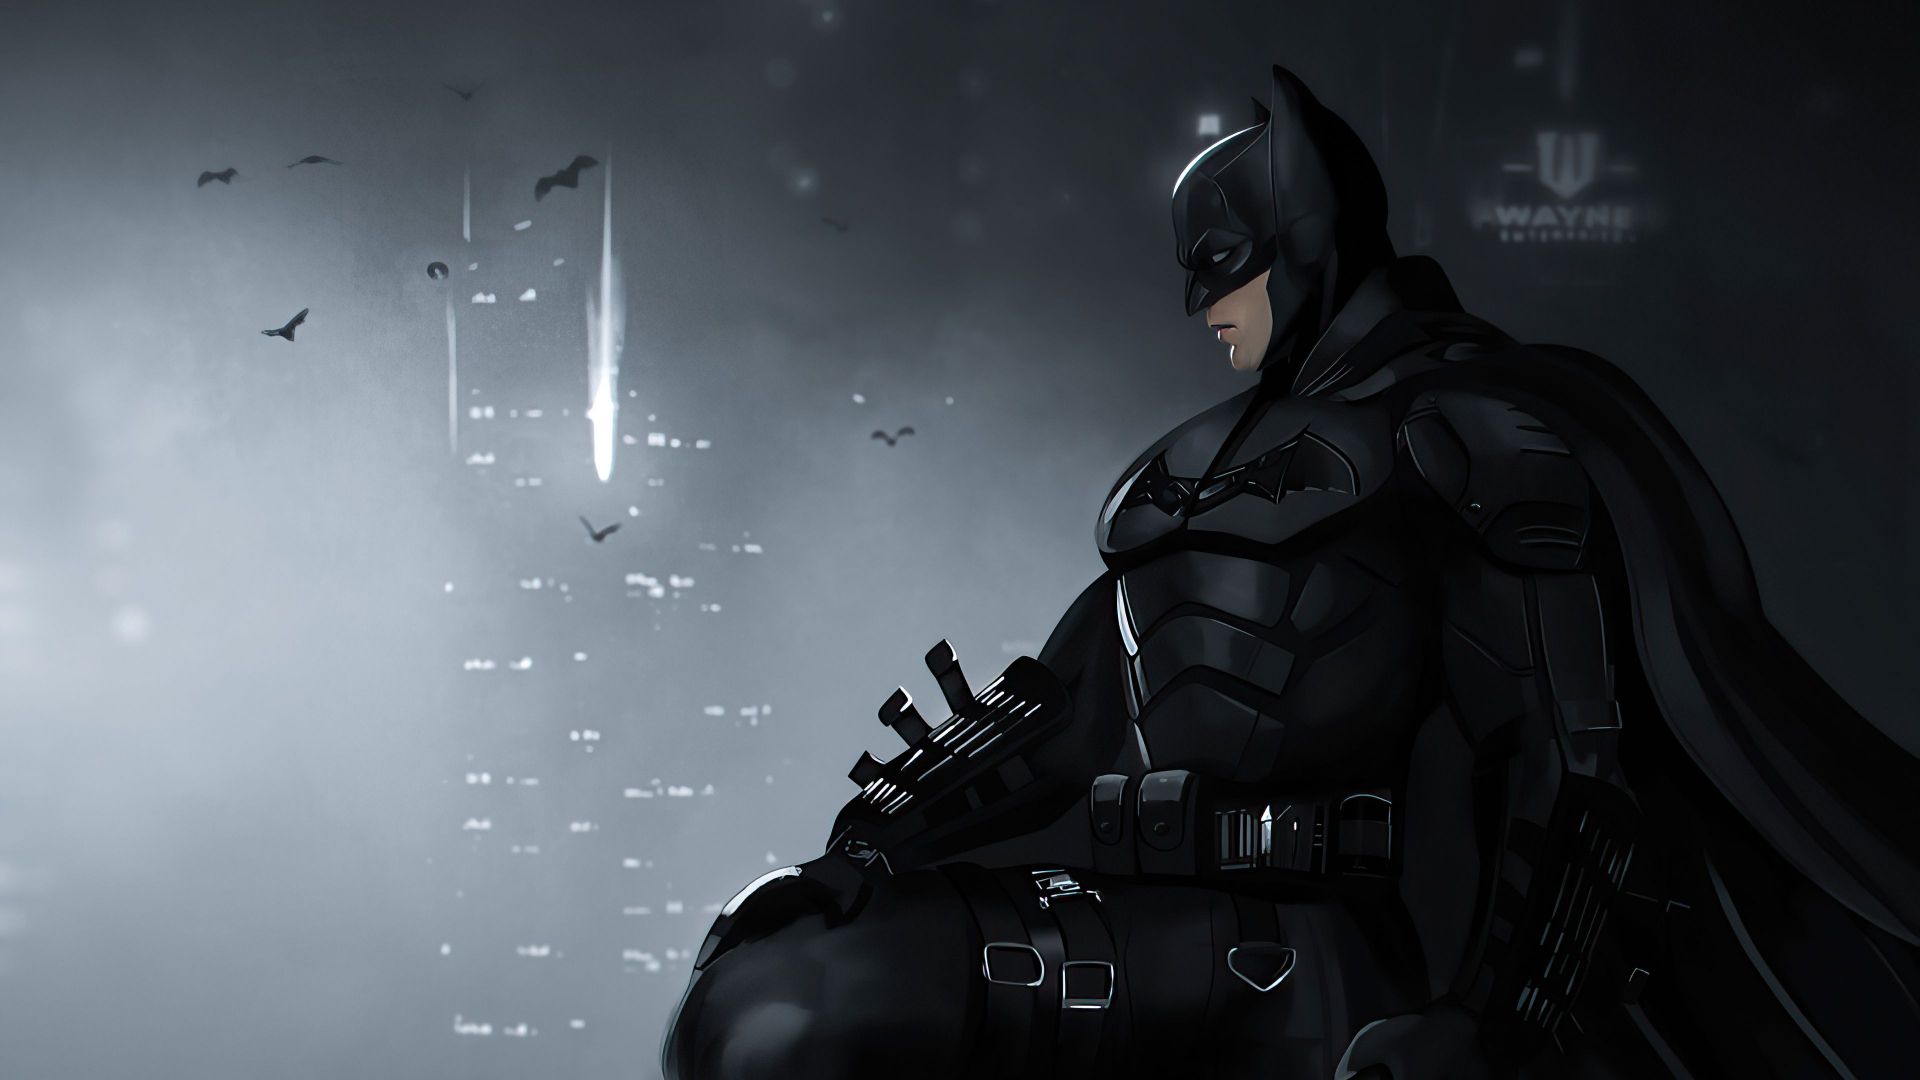 Free download Batman 2021 Desktop Wallpaper [3840x2160] for your Desktop, Mobile & Tablet. Explore The Batman 2021 Wallpaper. The Batman Wallpaper, Beware The Batman Wallpaper, Wallpaper Batman The Dark Knight